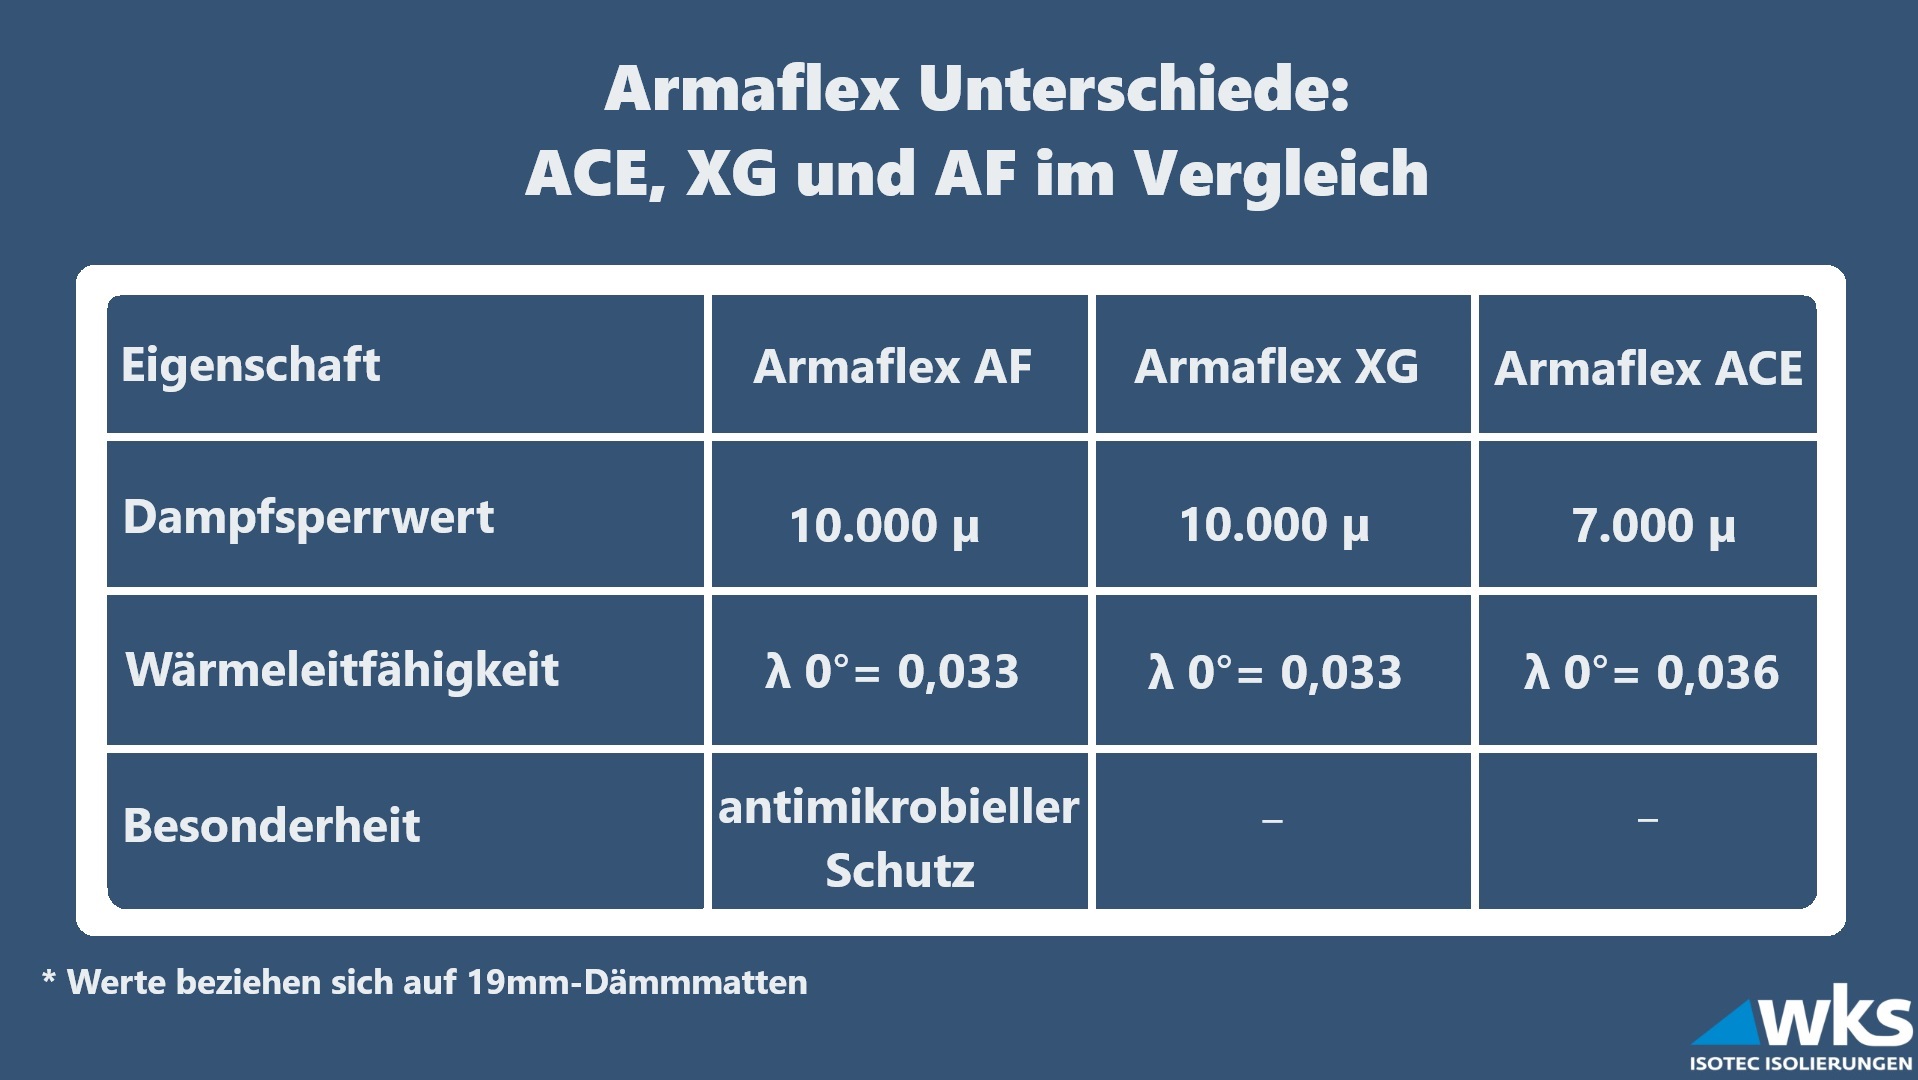 Armaflex Unterschiede: ACE, XG und AF im Verleich